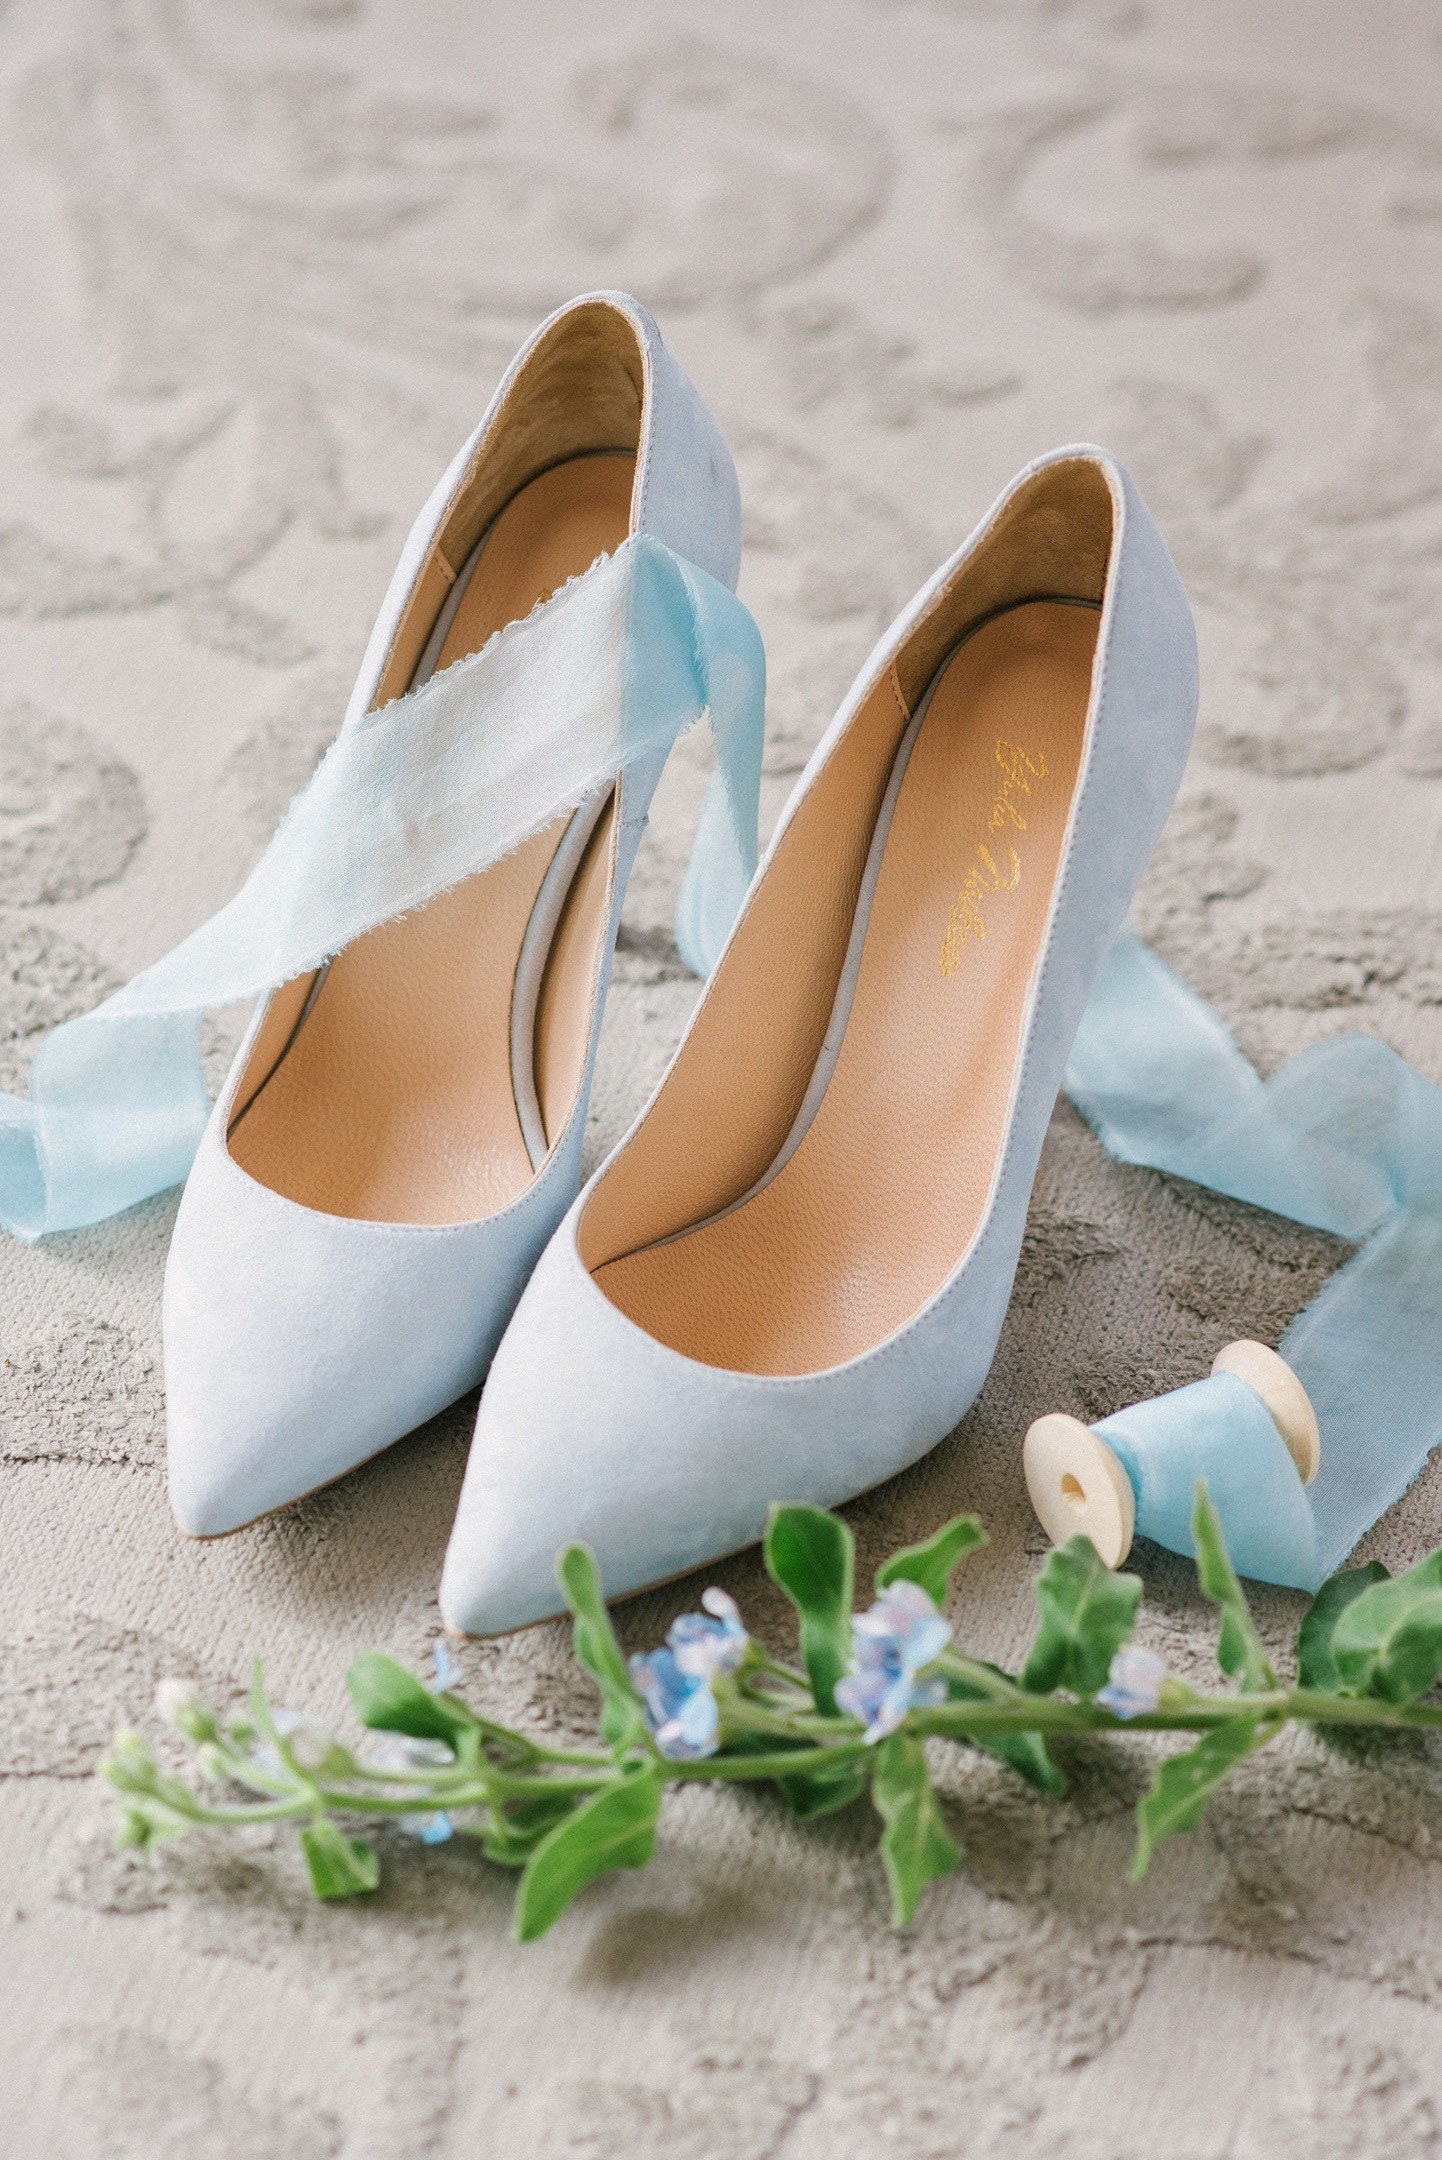 Blue wedding shoes wedding shoes bridal shoes wedding Etsy